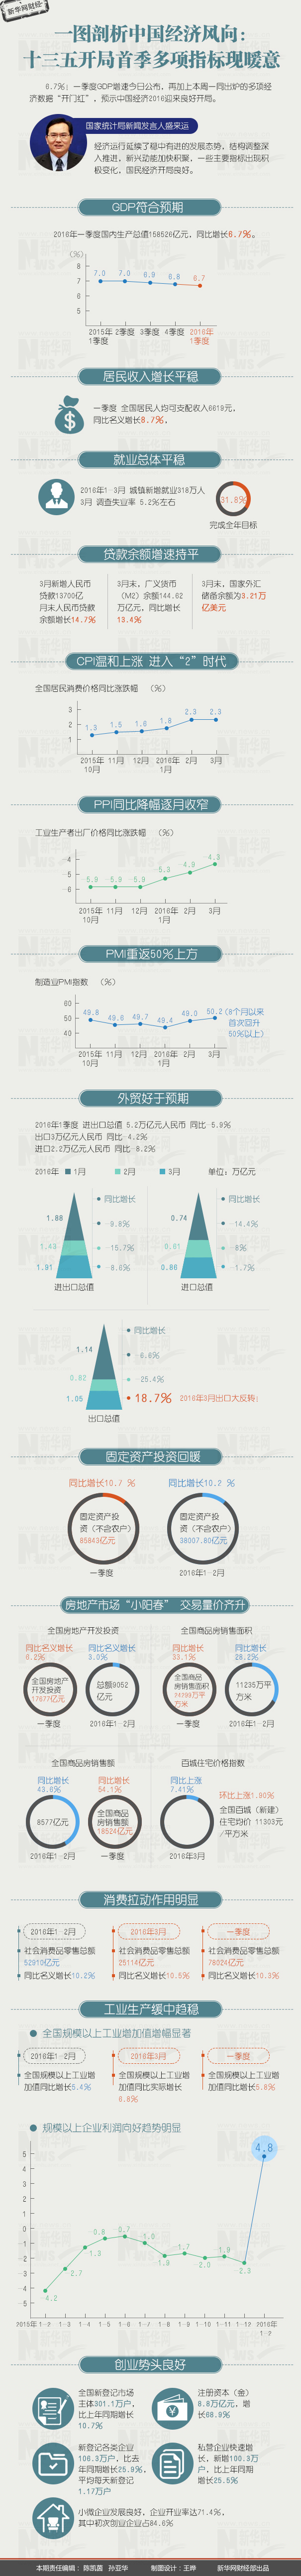 剖析中国经济风向：十三五开局首季多项指标现暖意1